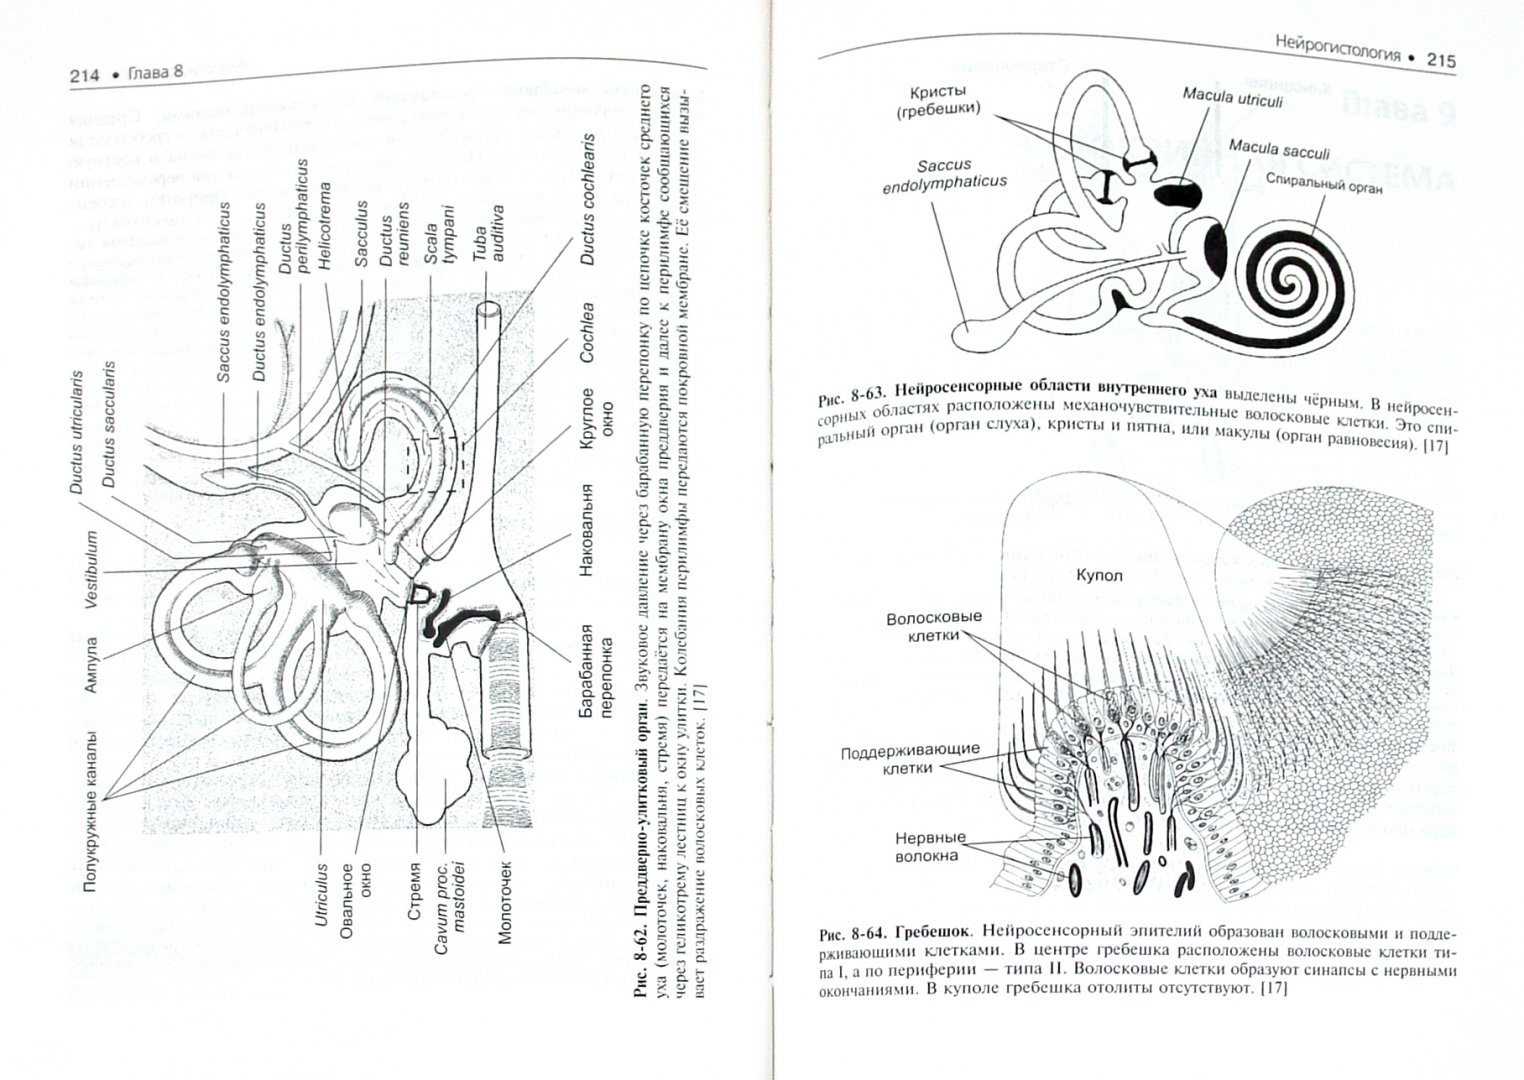 Иллюстрация 1 из 16 для Гистология, эмбриология, цитология (+ CD) - Улумбеков, Челышев | Лабиринт - книги. Источник: Лабиринт